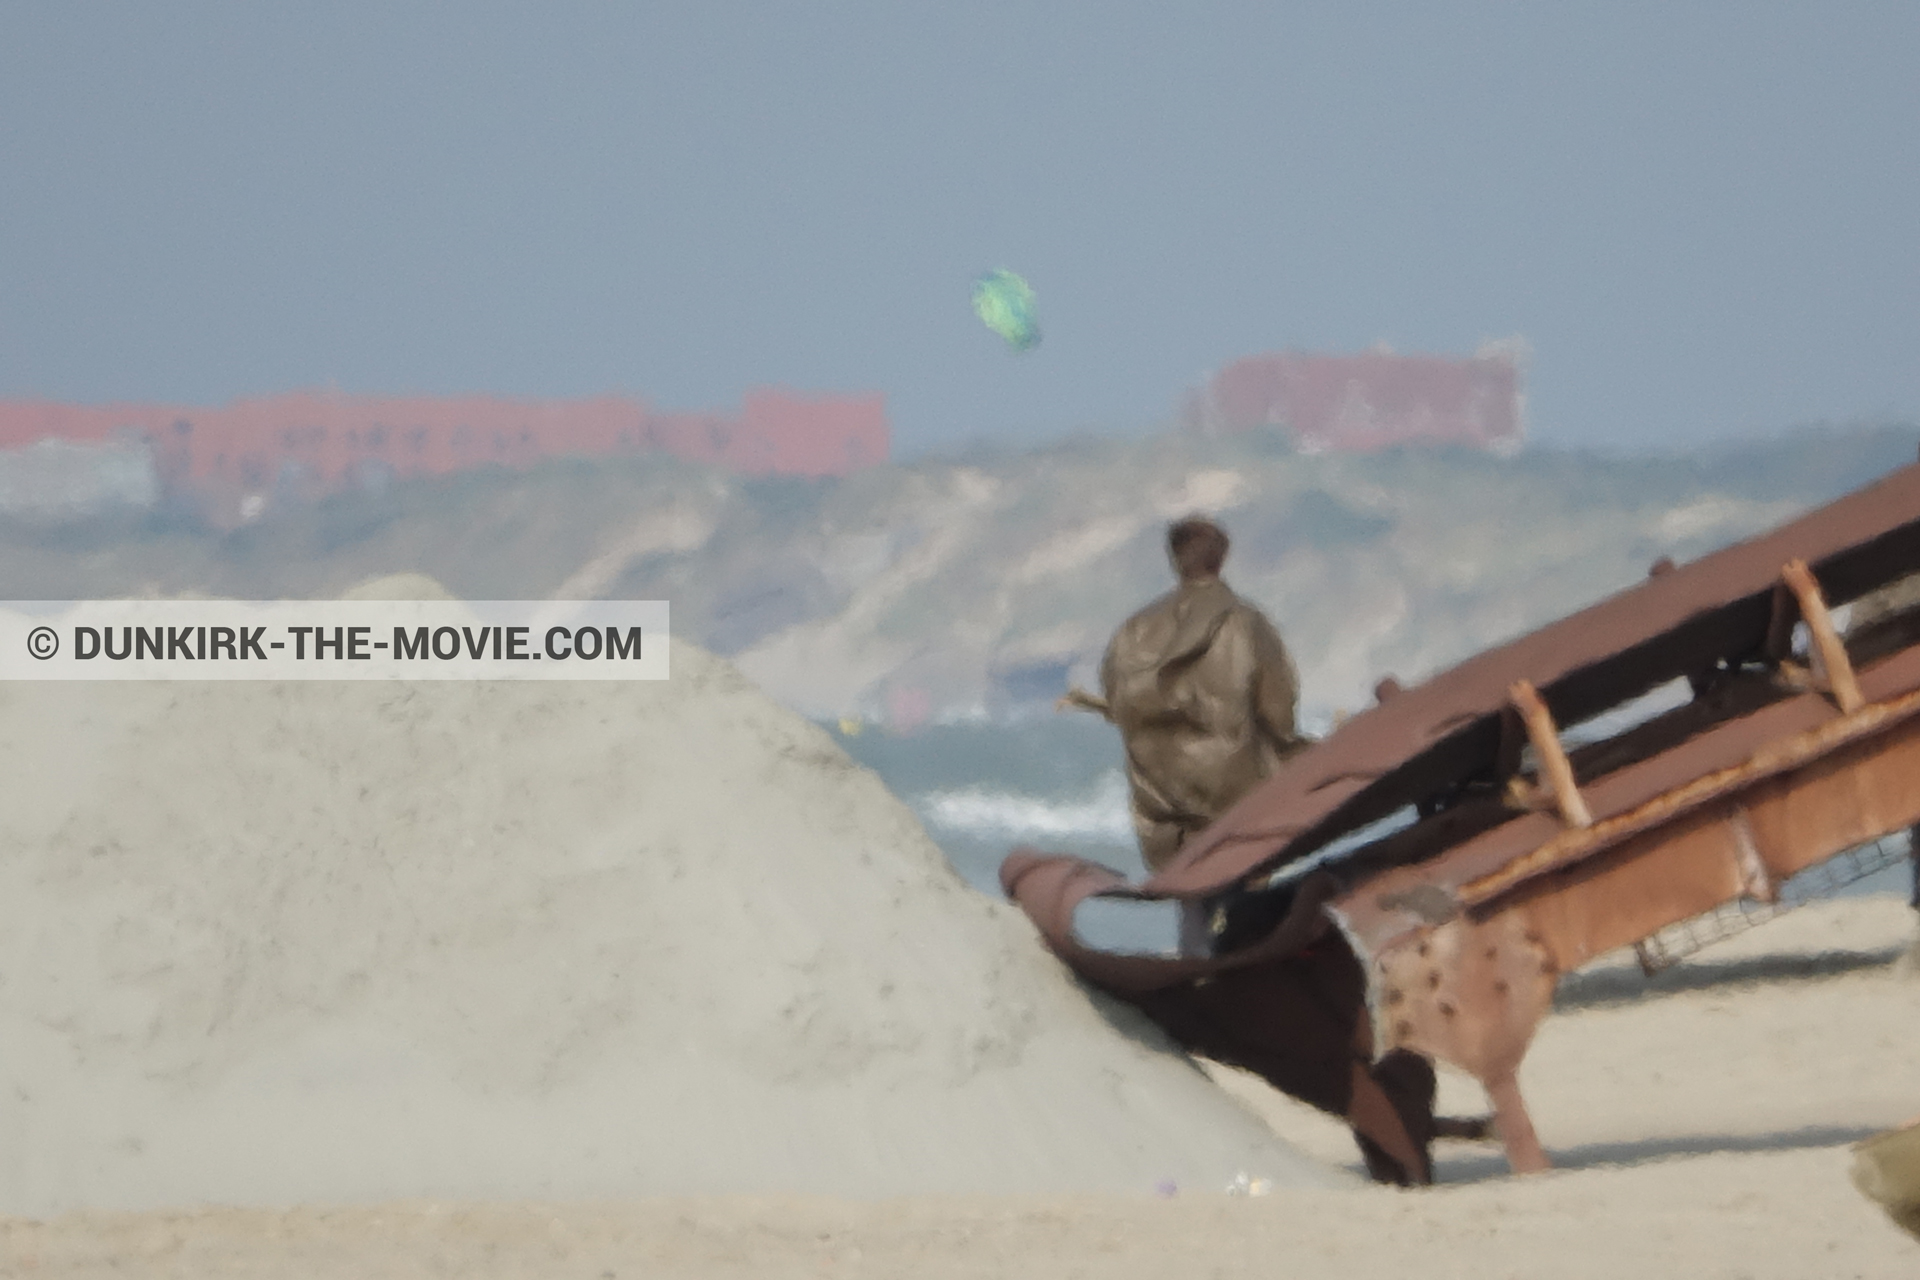 Fotos con decoración, extras, playa,  durante el rodaje de la película Dunkerque de Nolan